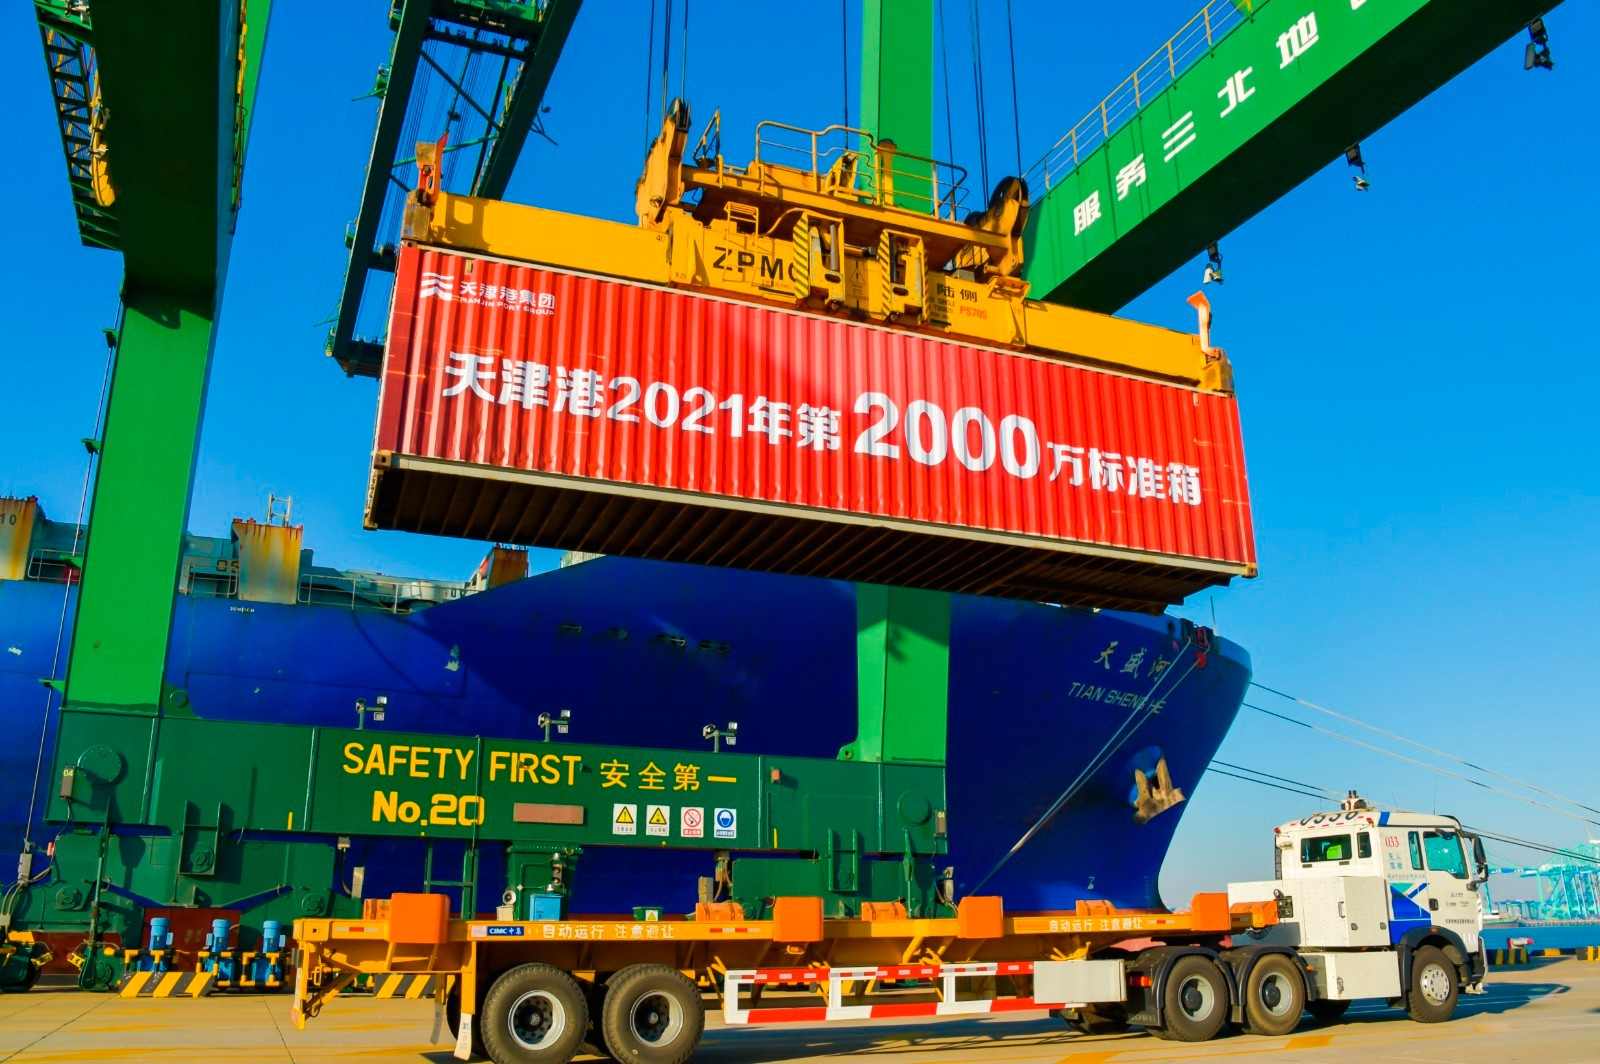 全球首个零碳码头亮相天津港，天津港年集装箱吞吐量首次突破2000万标准箱，北方国际航运枢纽建设获重大进展